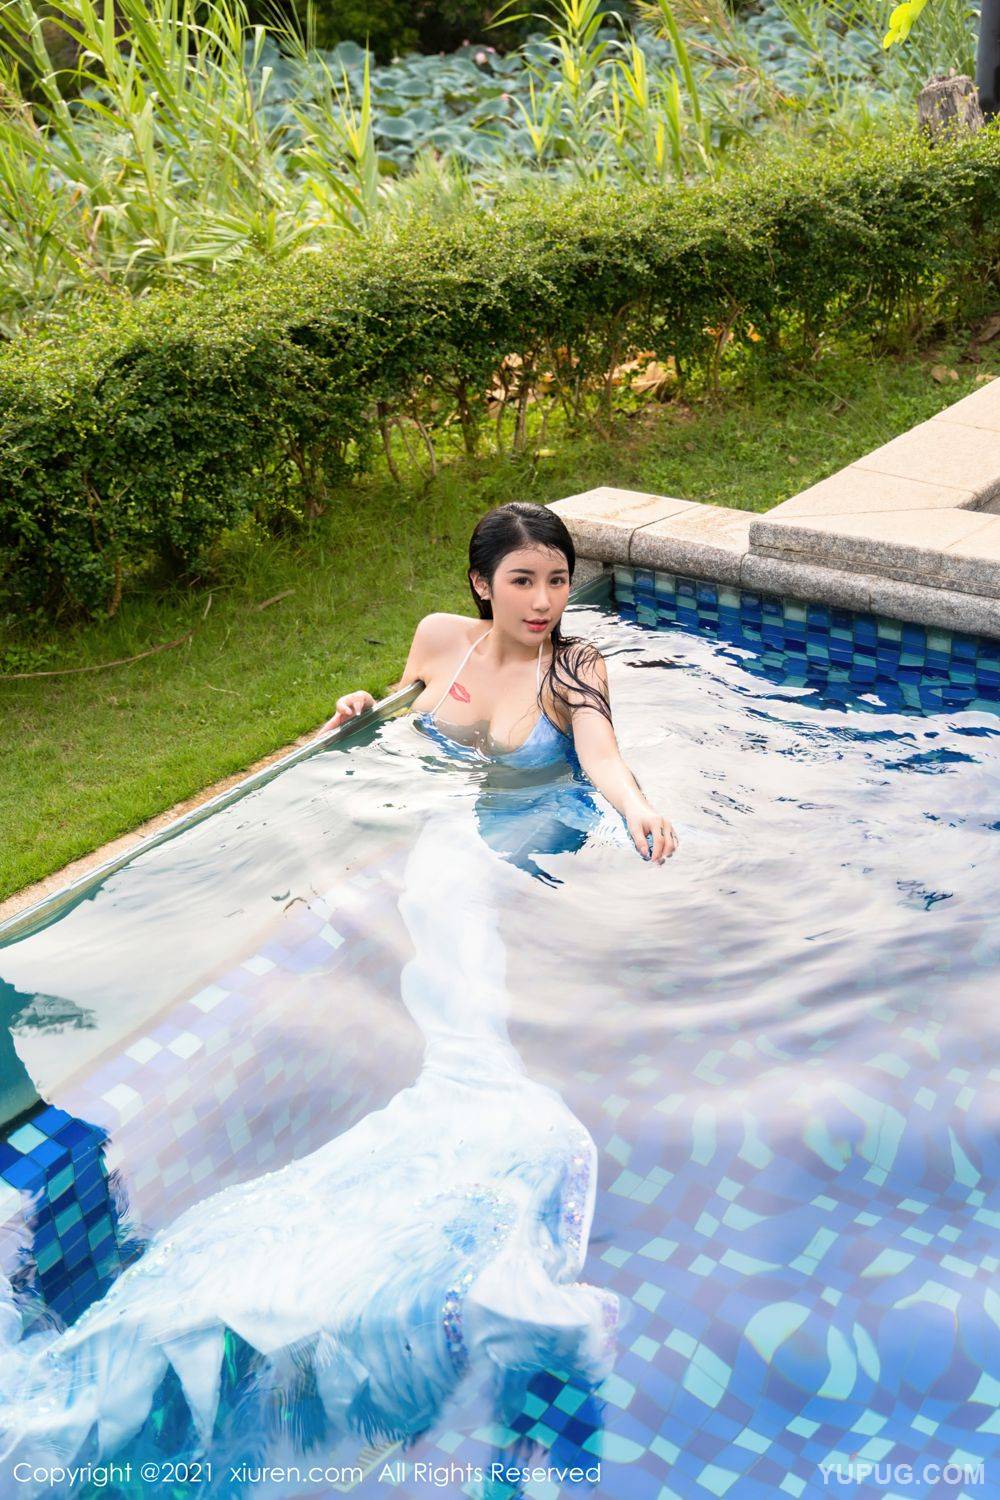 Meiqi Mia swimming pool series gorgeous mermaid clothing